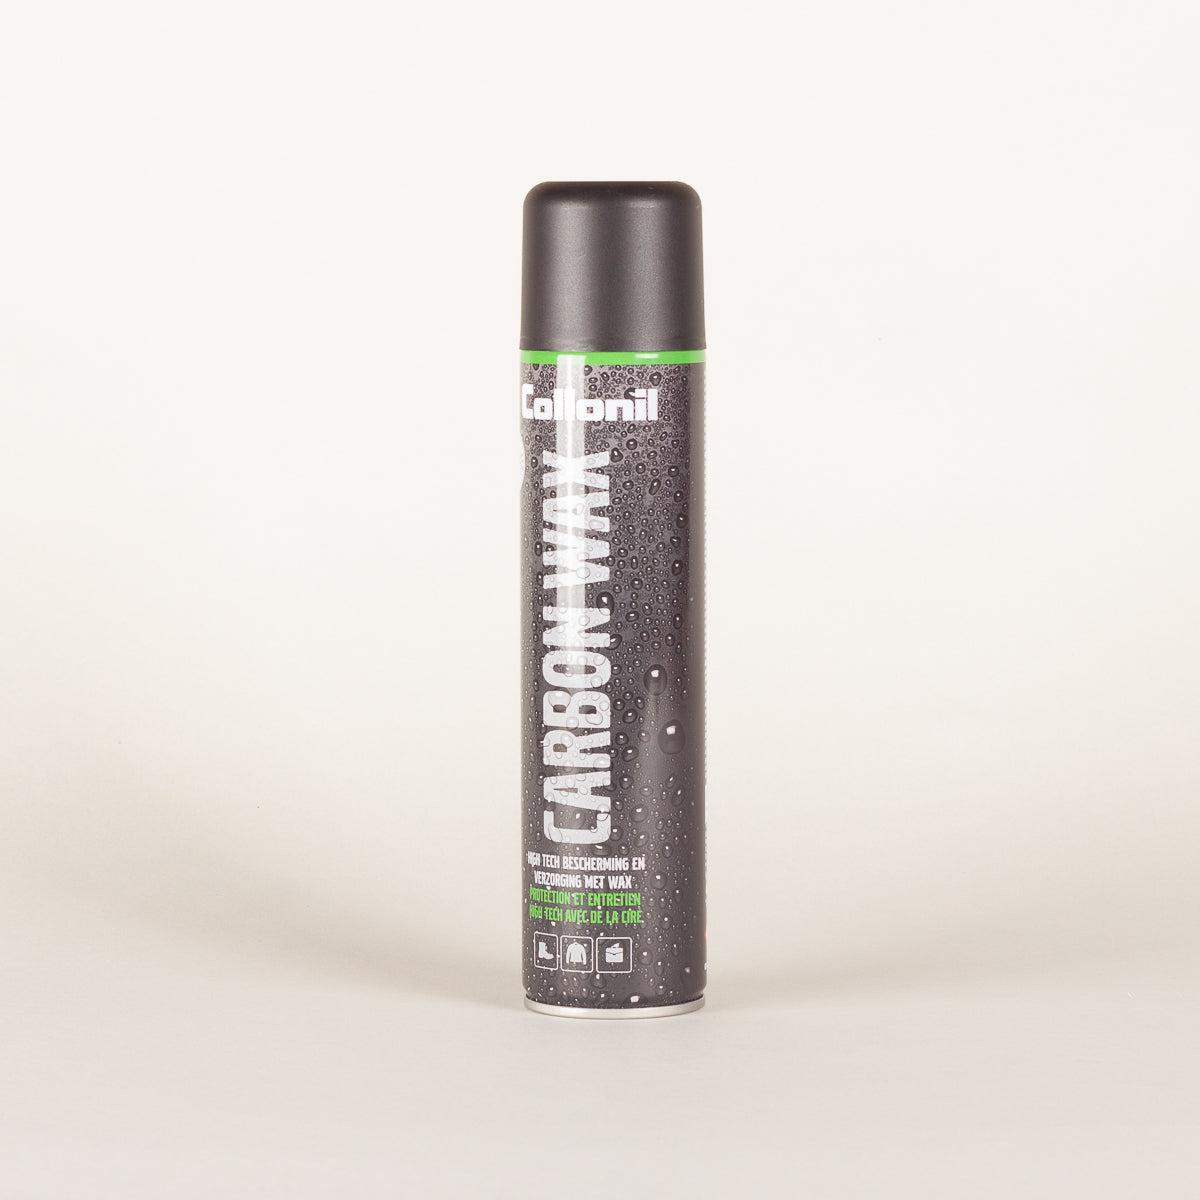 Aarzelen voor mij Kangoeroe Collonil Carbon Wax spray — Distinctly Different